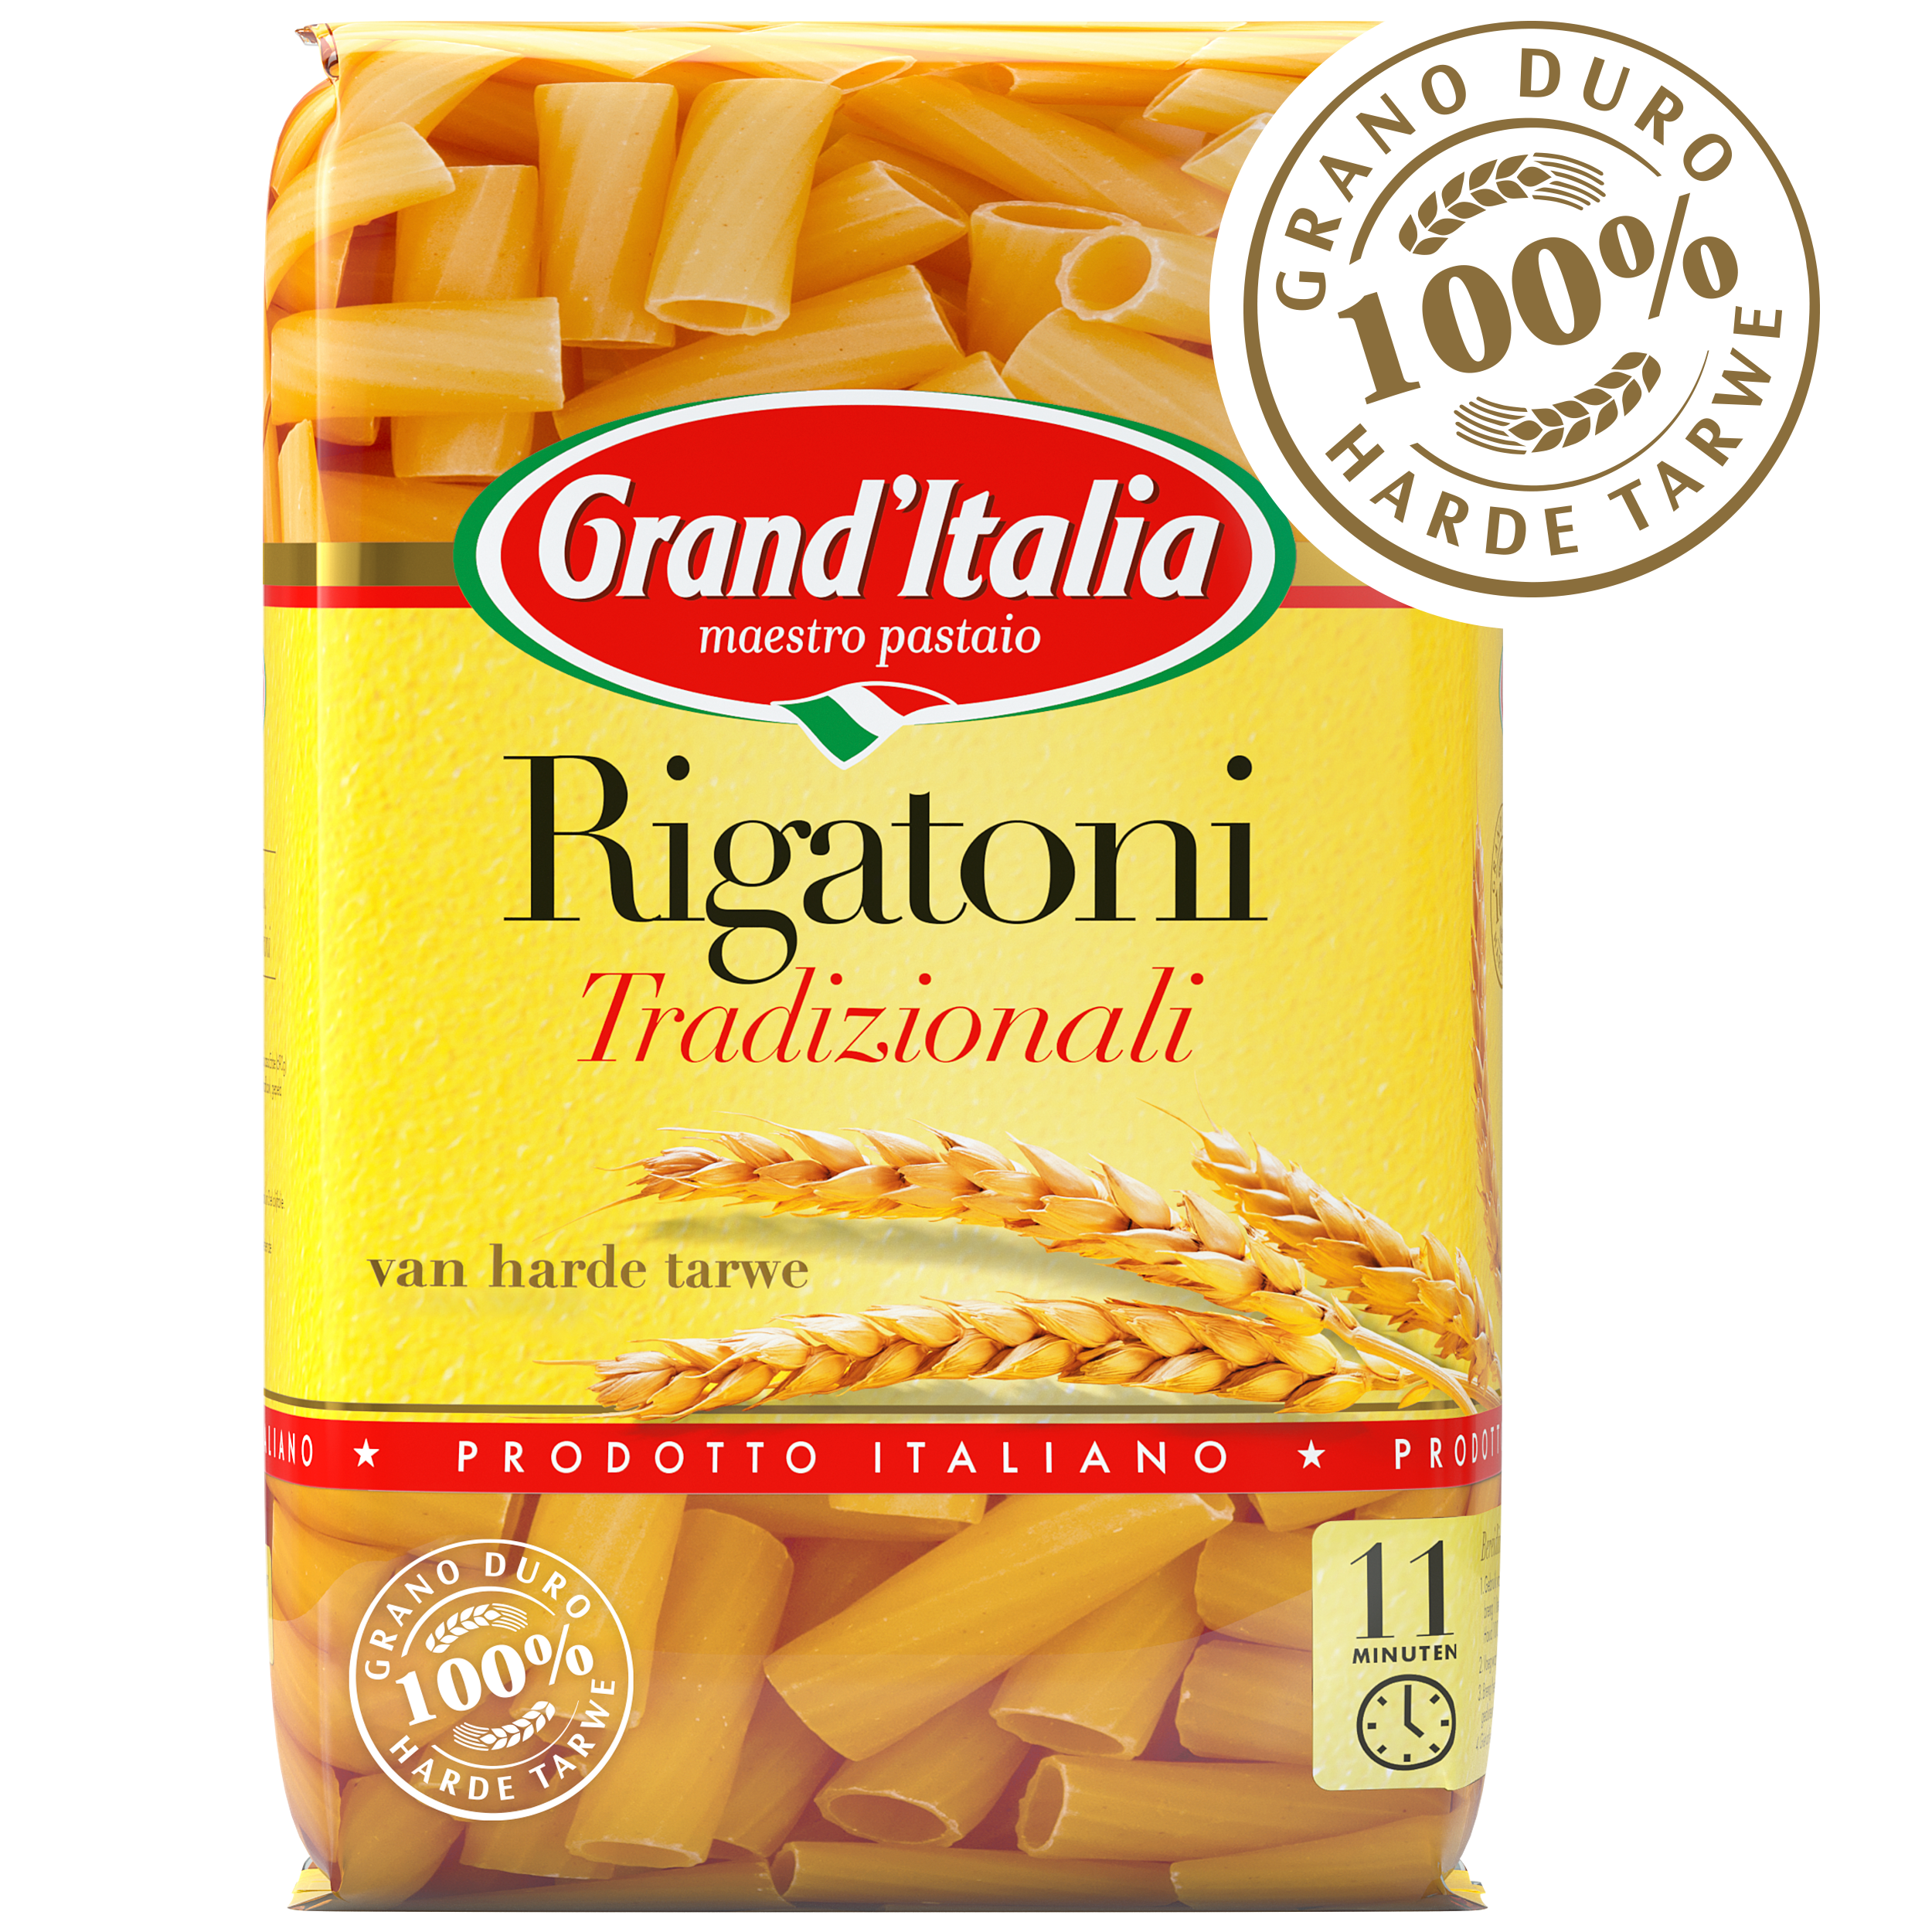 Pasta Rigatoni Tradizionali 500g claim Grand'Italia